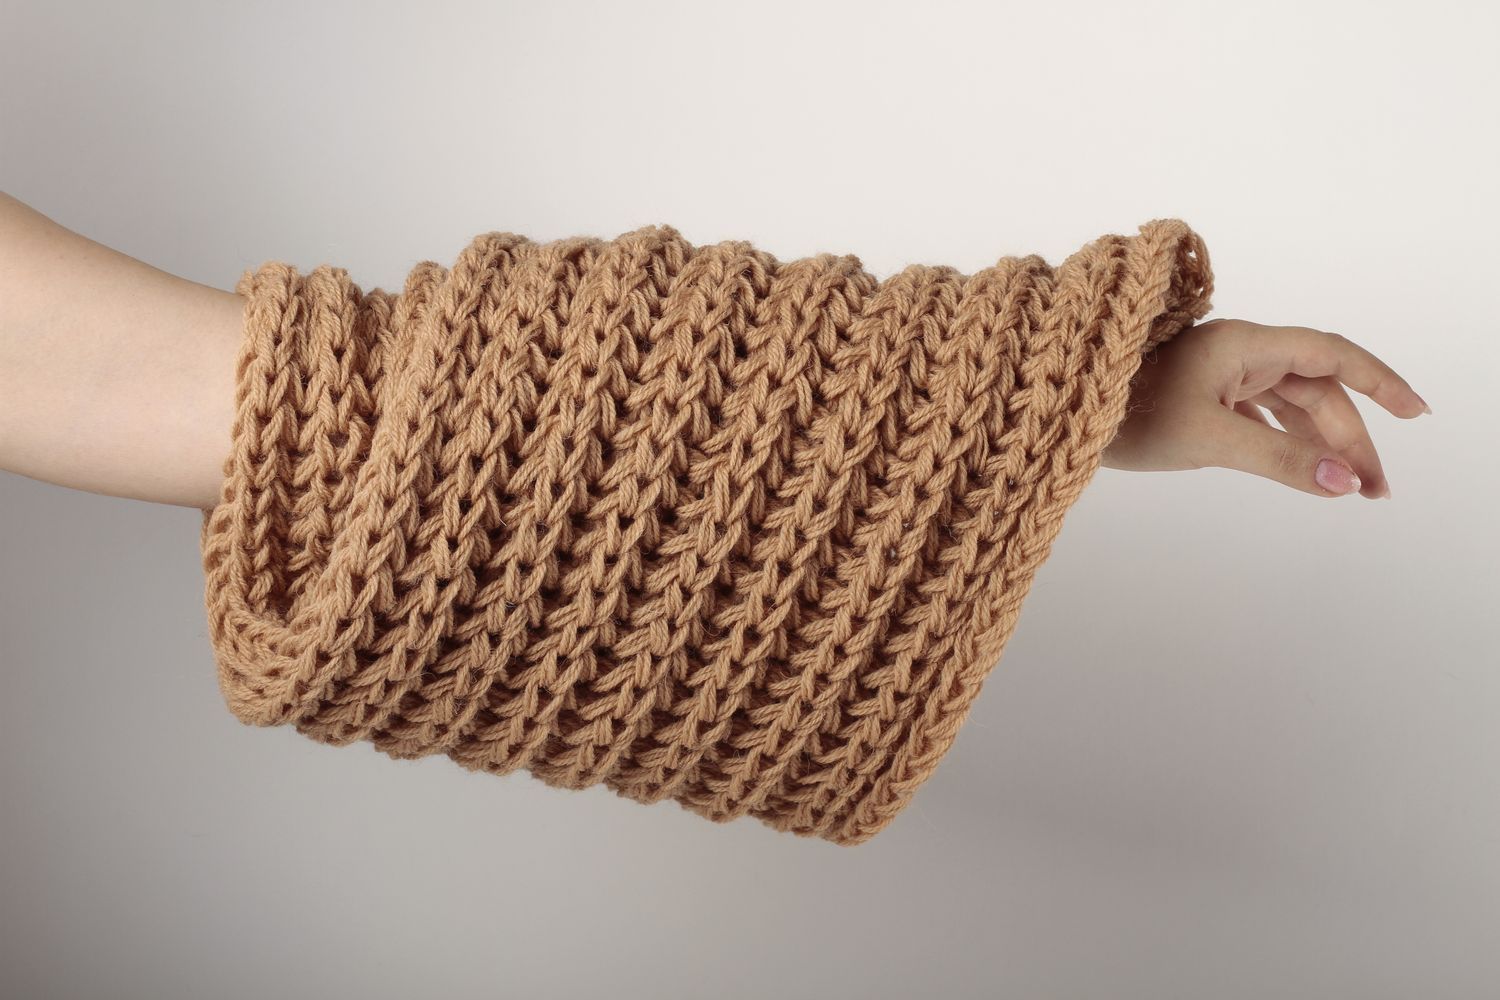 Écharpe beige faite main Vêtement femme tricot en laine large Idée cadeau photo 1